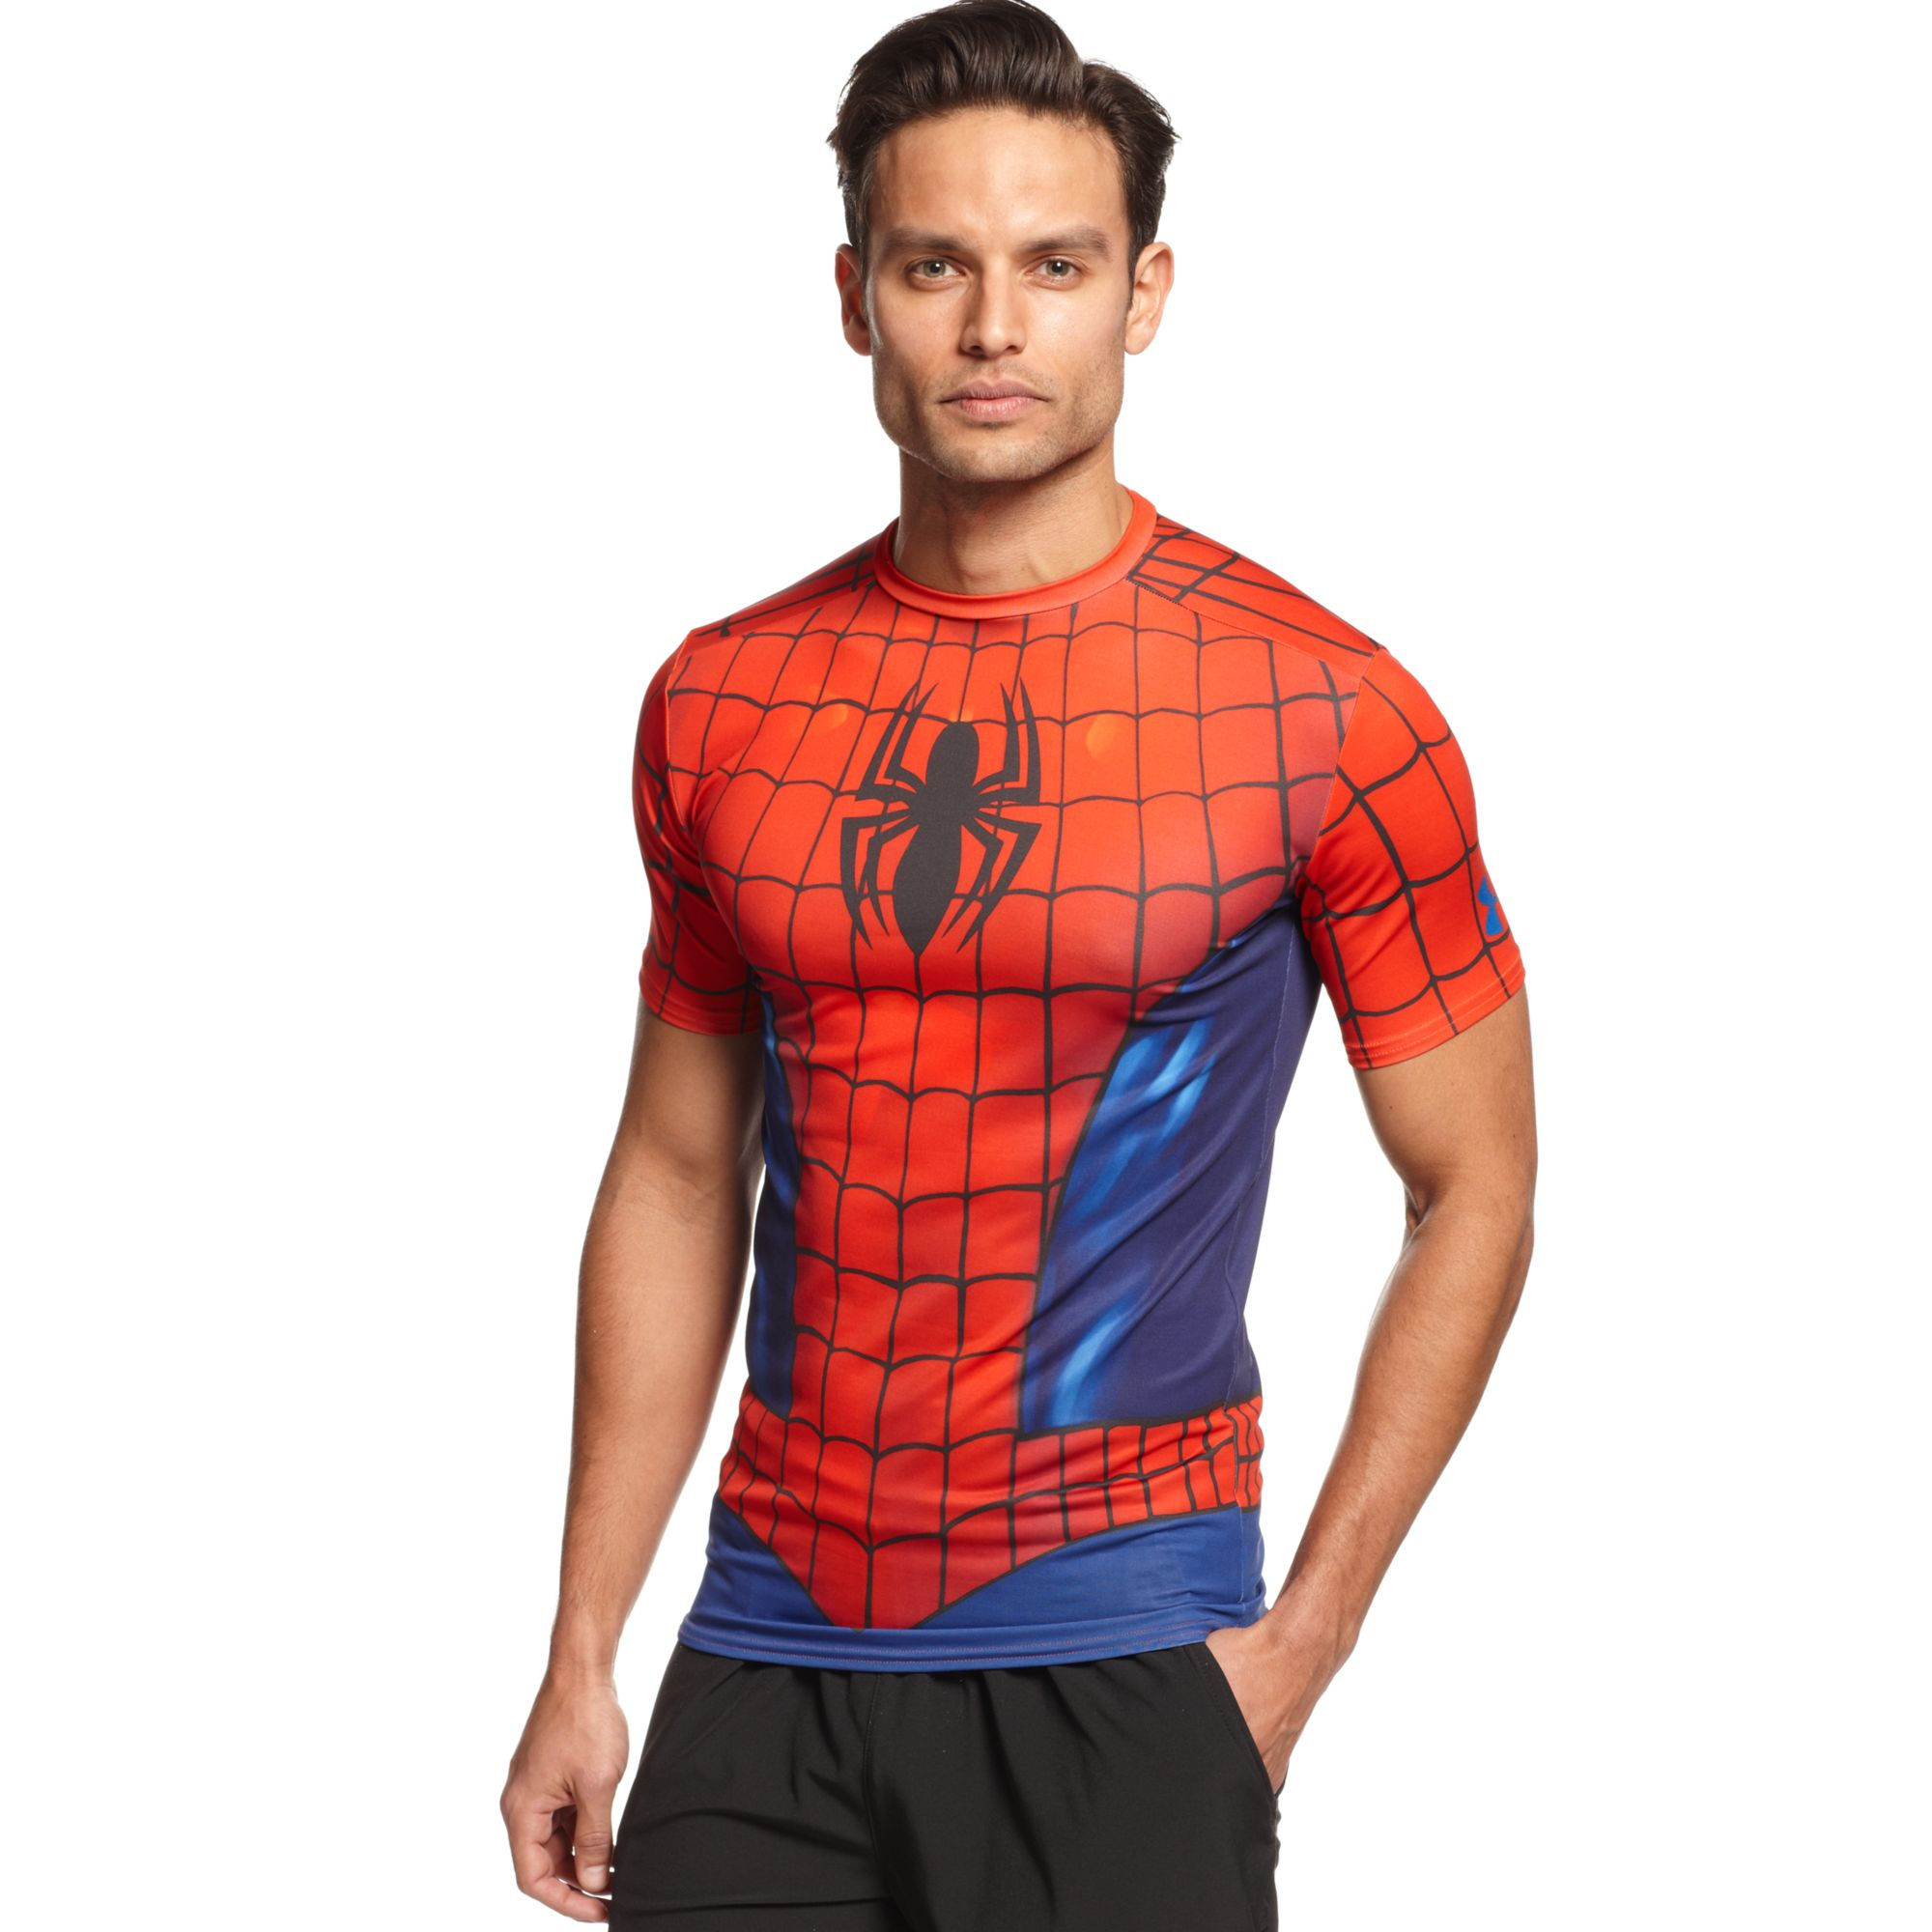 Spider Man Compression Shirt